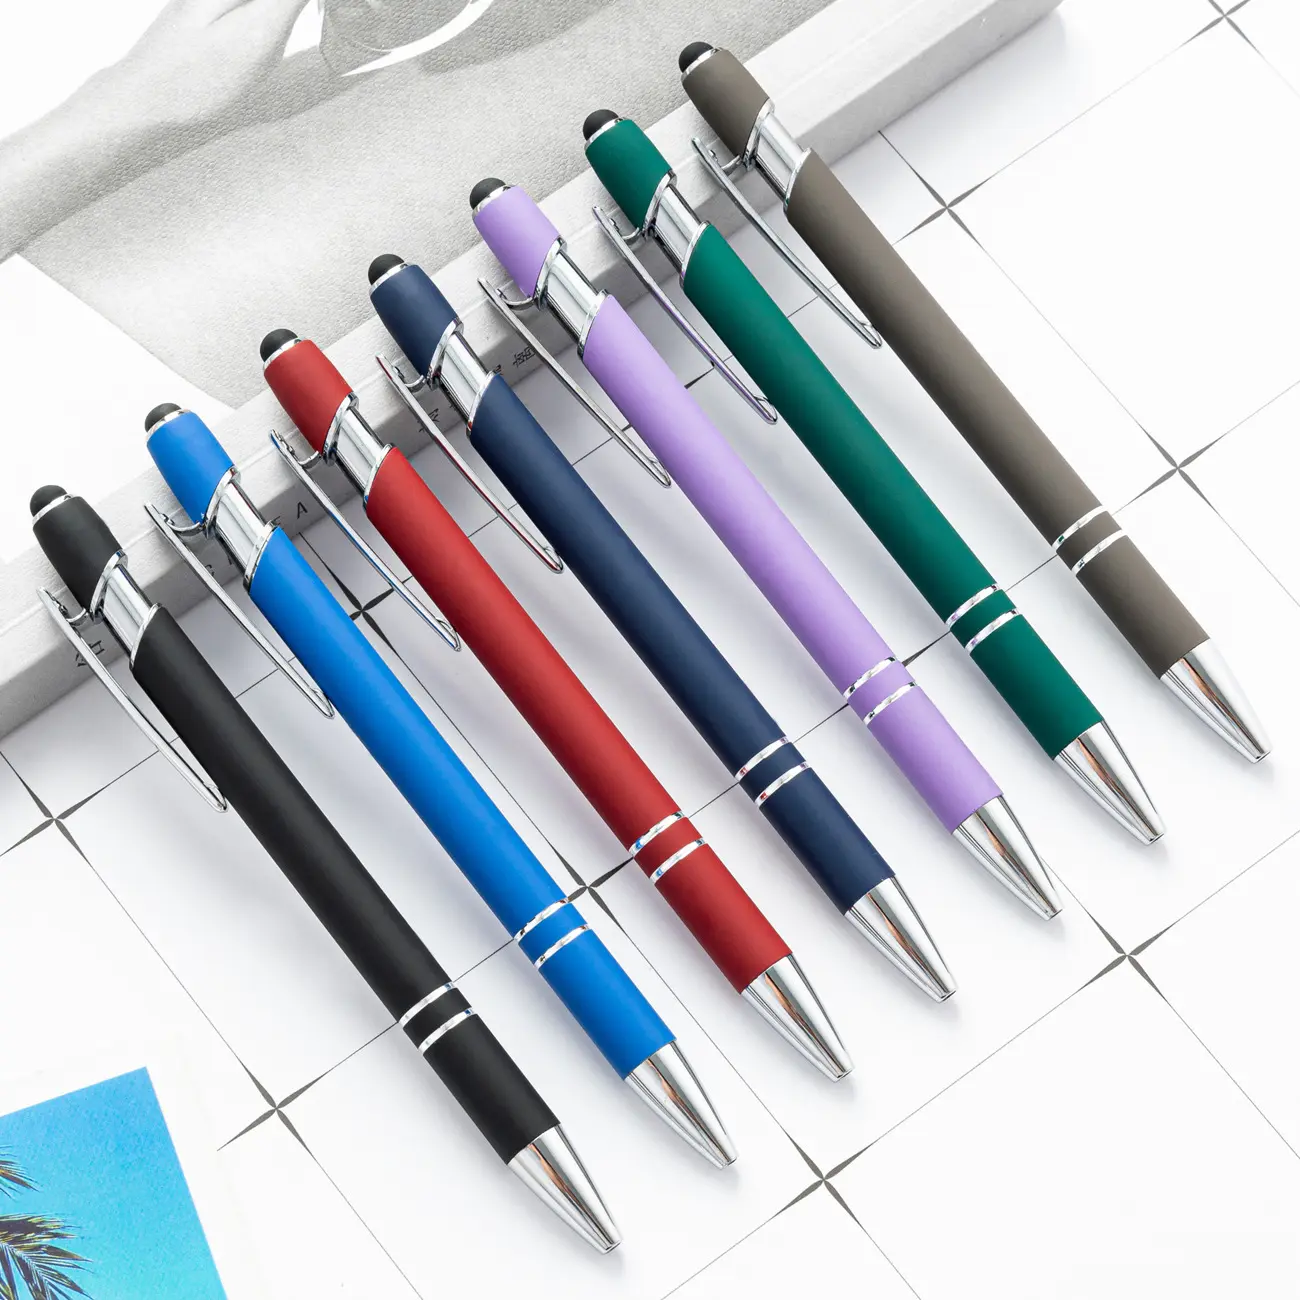 Vente en gros de métal presse aluminium tige stylo condensateur stylo à bille tactile manuscrite écran tactile stylo cadeau